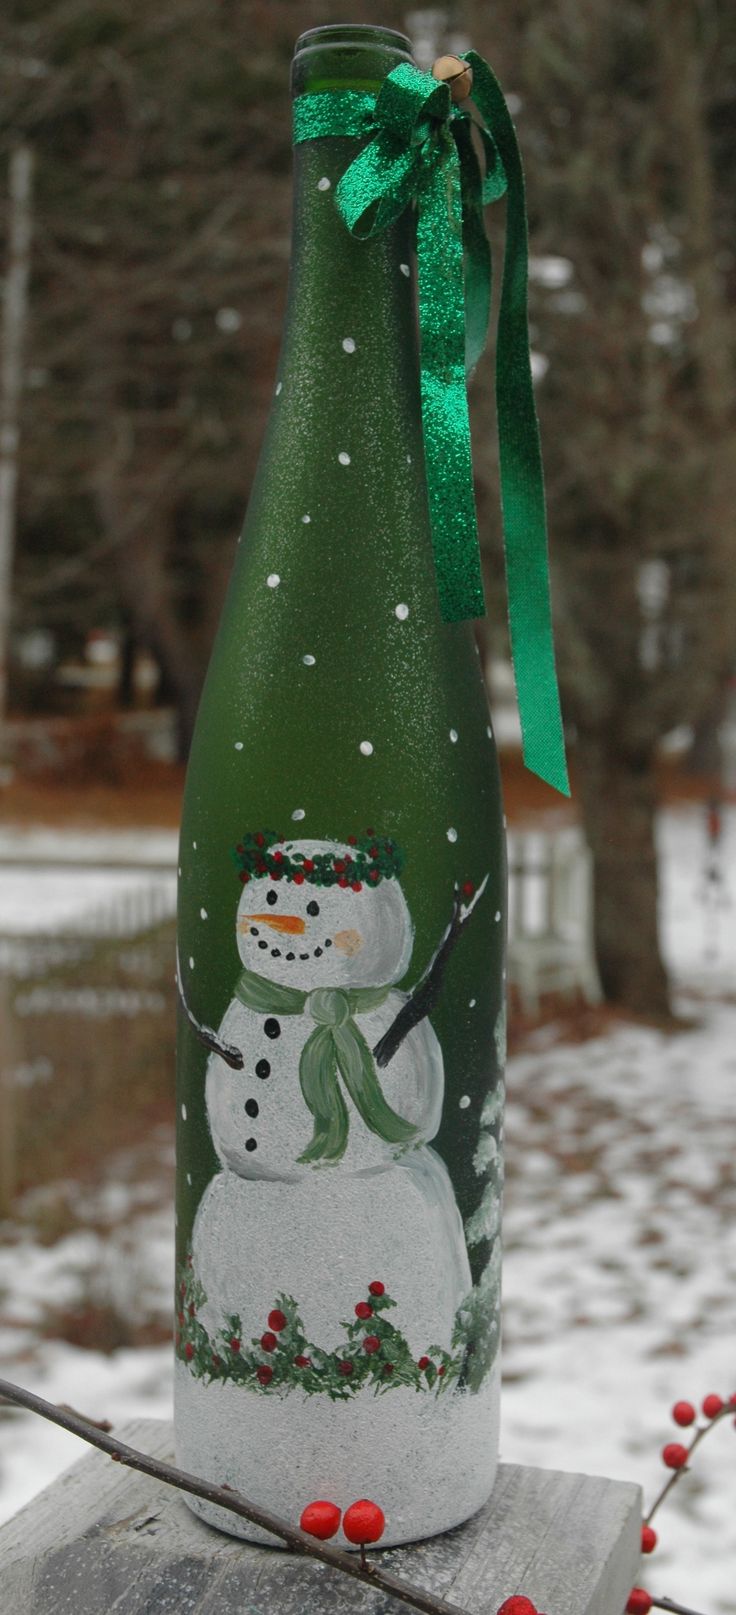 Μπουκάλι σαμπάνιας Decoupage για νέο έτος με έναν χιονάνθρωπο